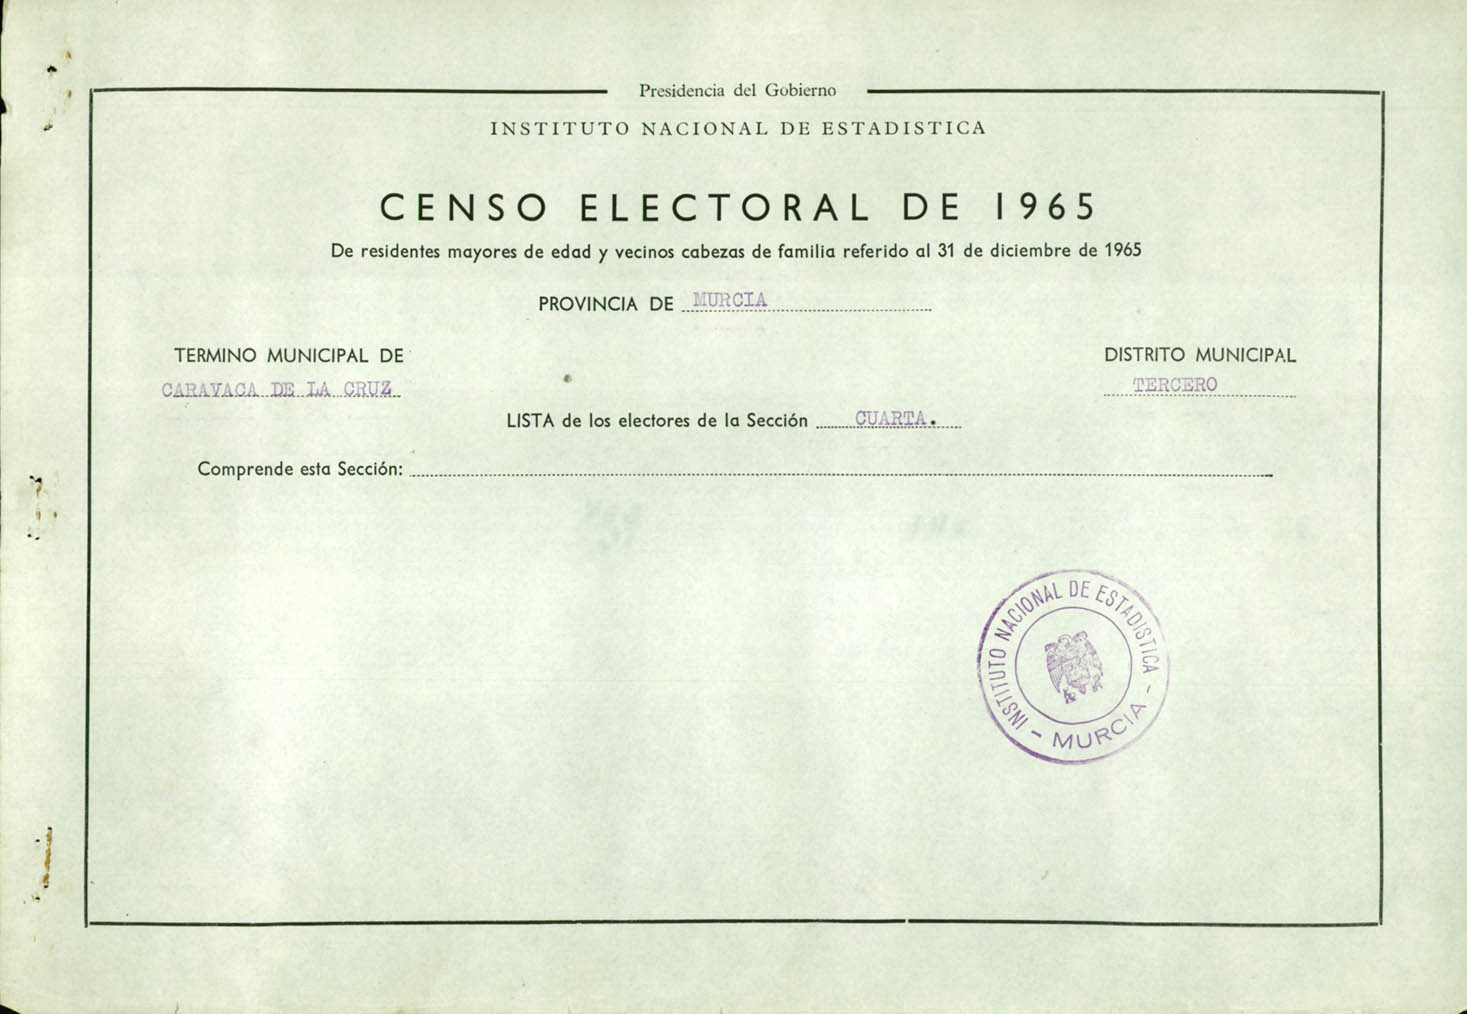 Censo electoral provincial de 1965: listas definitivas de Caravaca de la Cruz, Distrito 3º, sección 4º (Archivel).